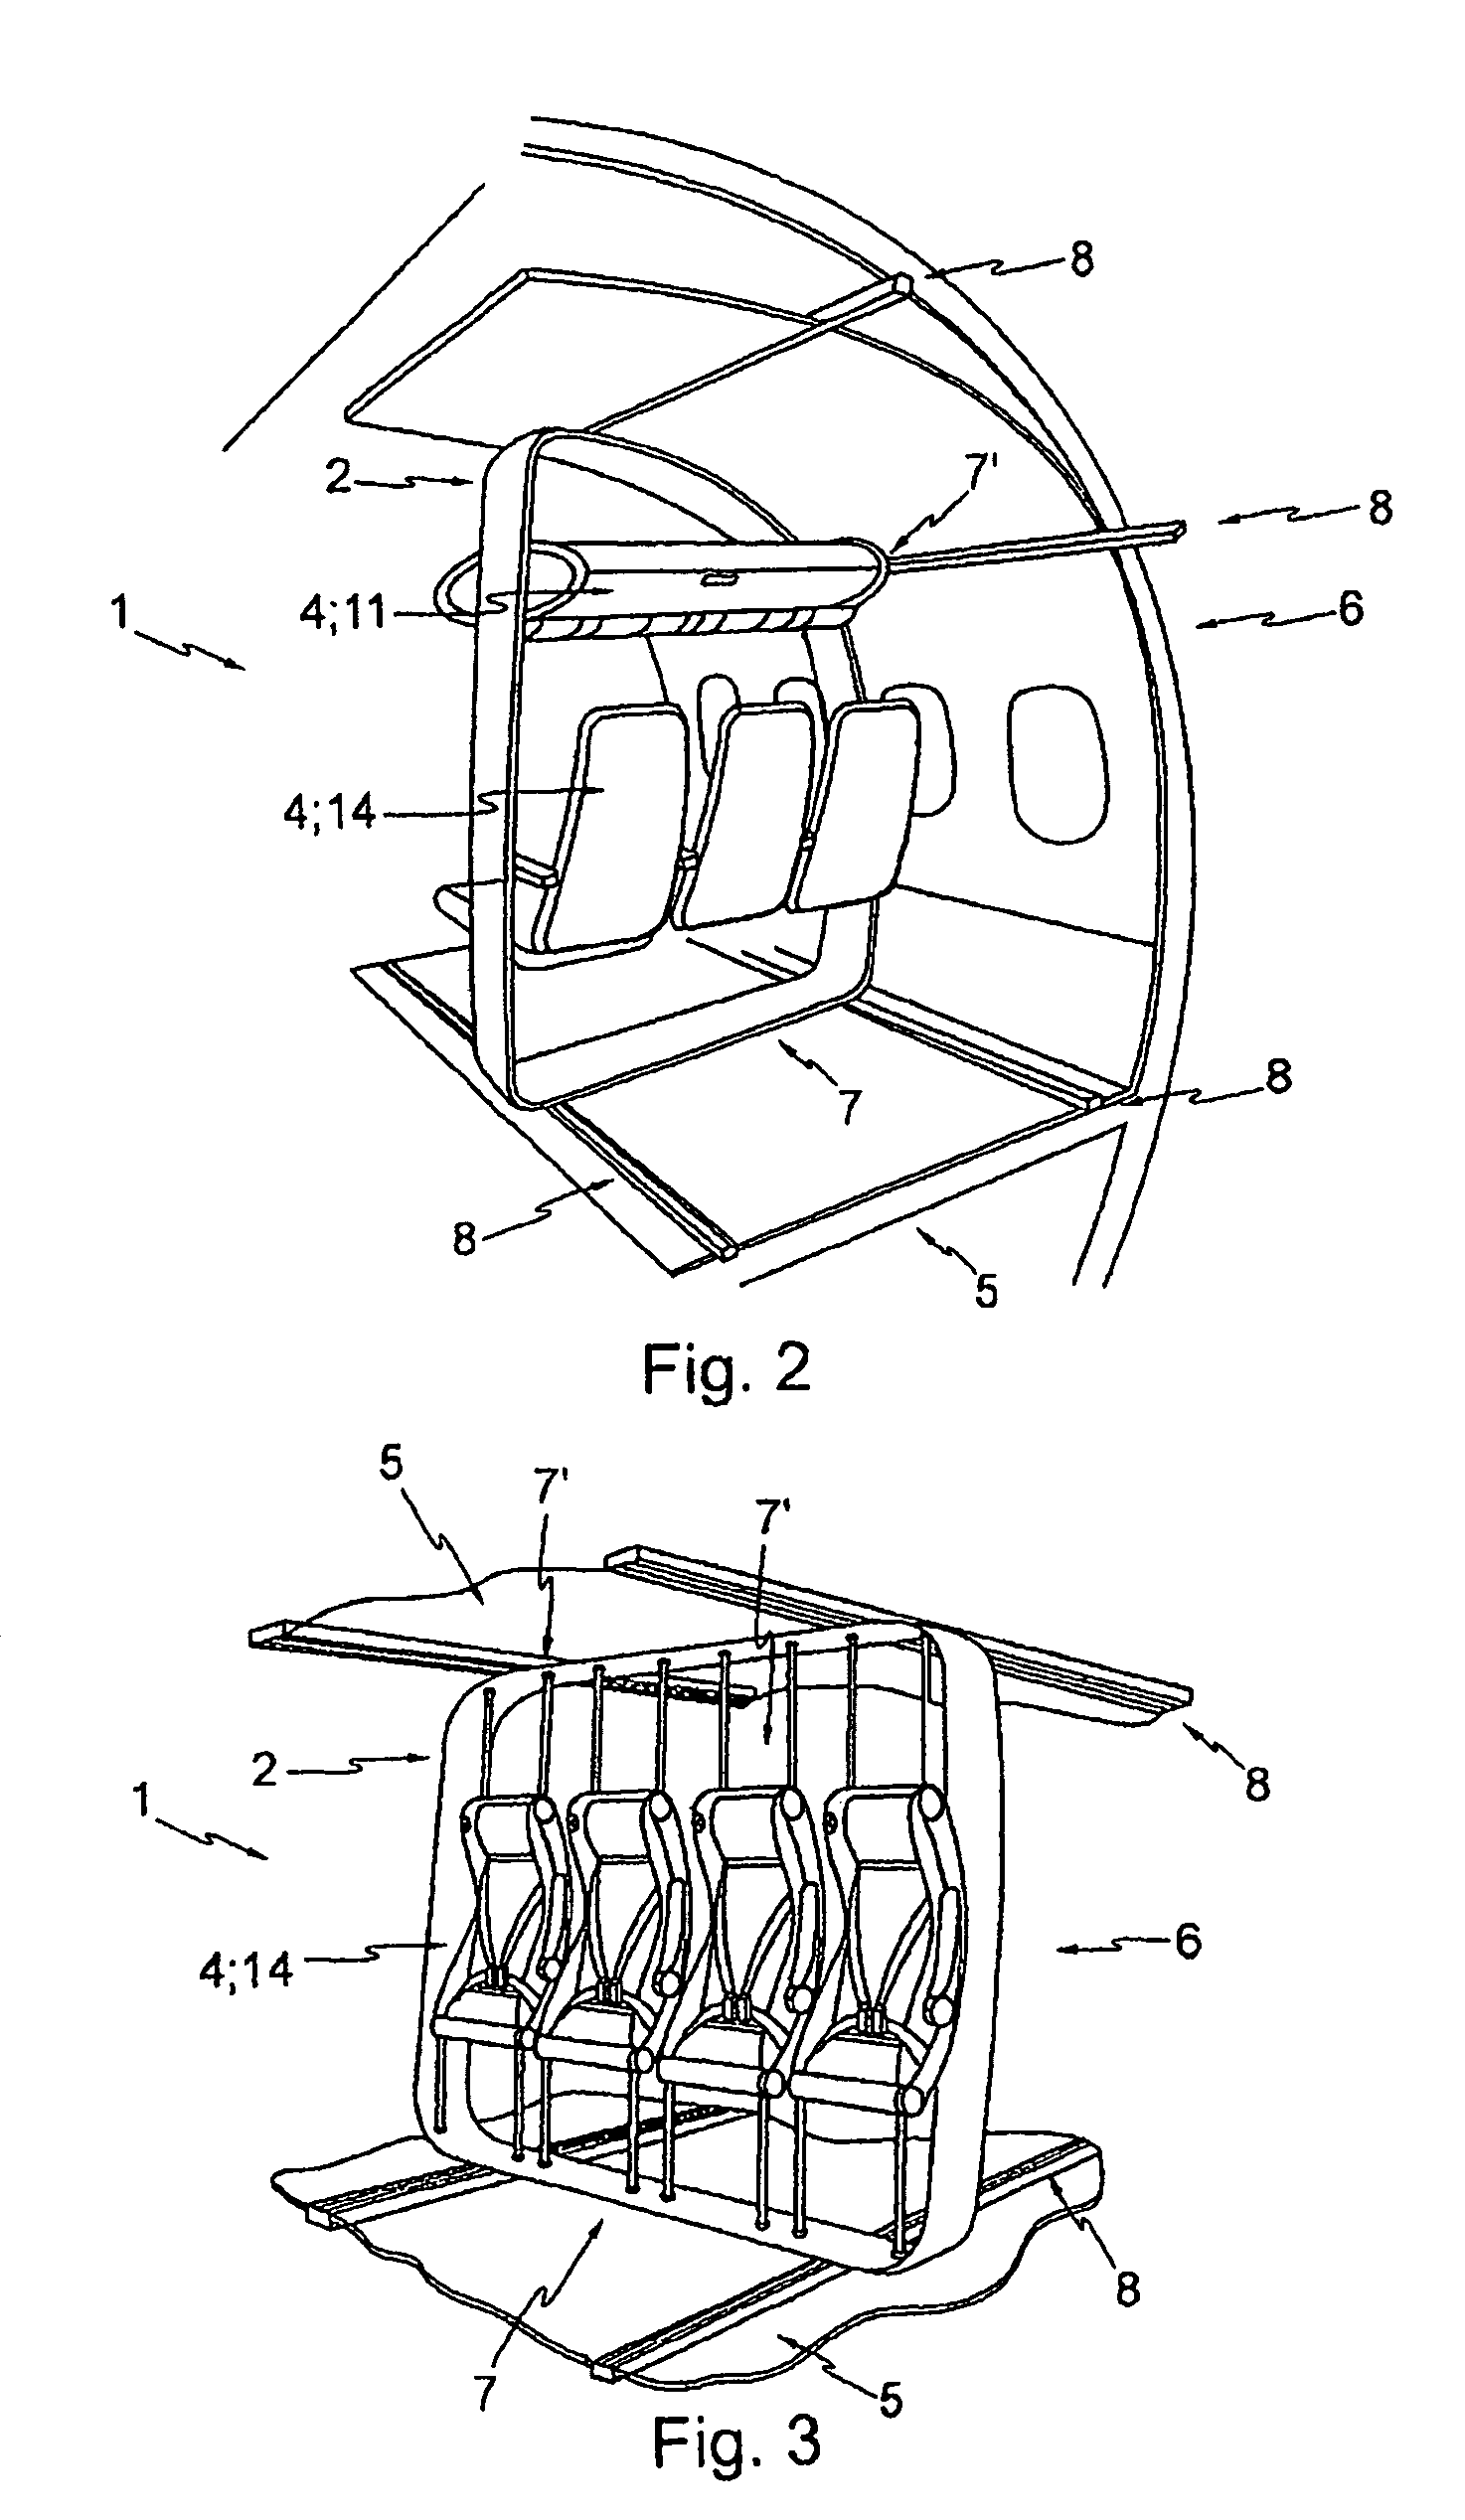 Module for an aircraft